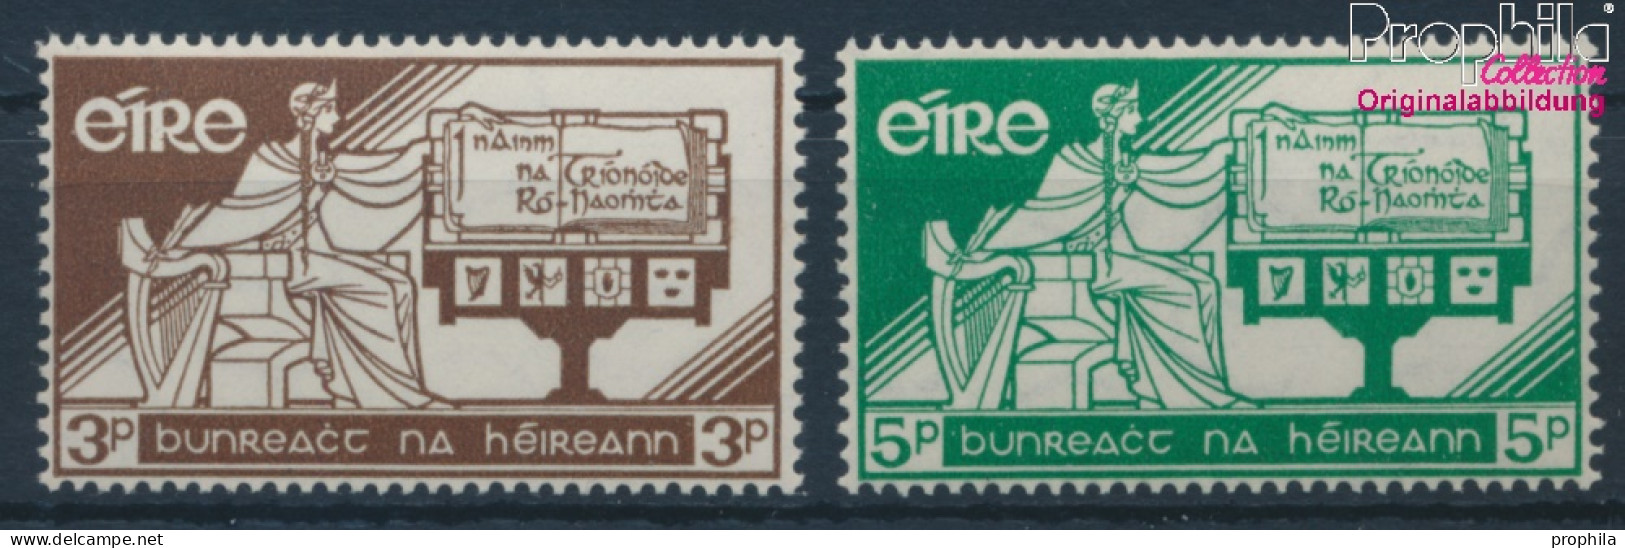 Irland 140-141 (kompl.Ausg.) Postfrisch 1958 Verfassung (10398346 - Ungebraucht